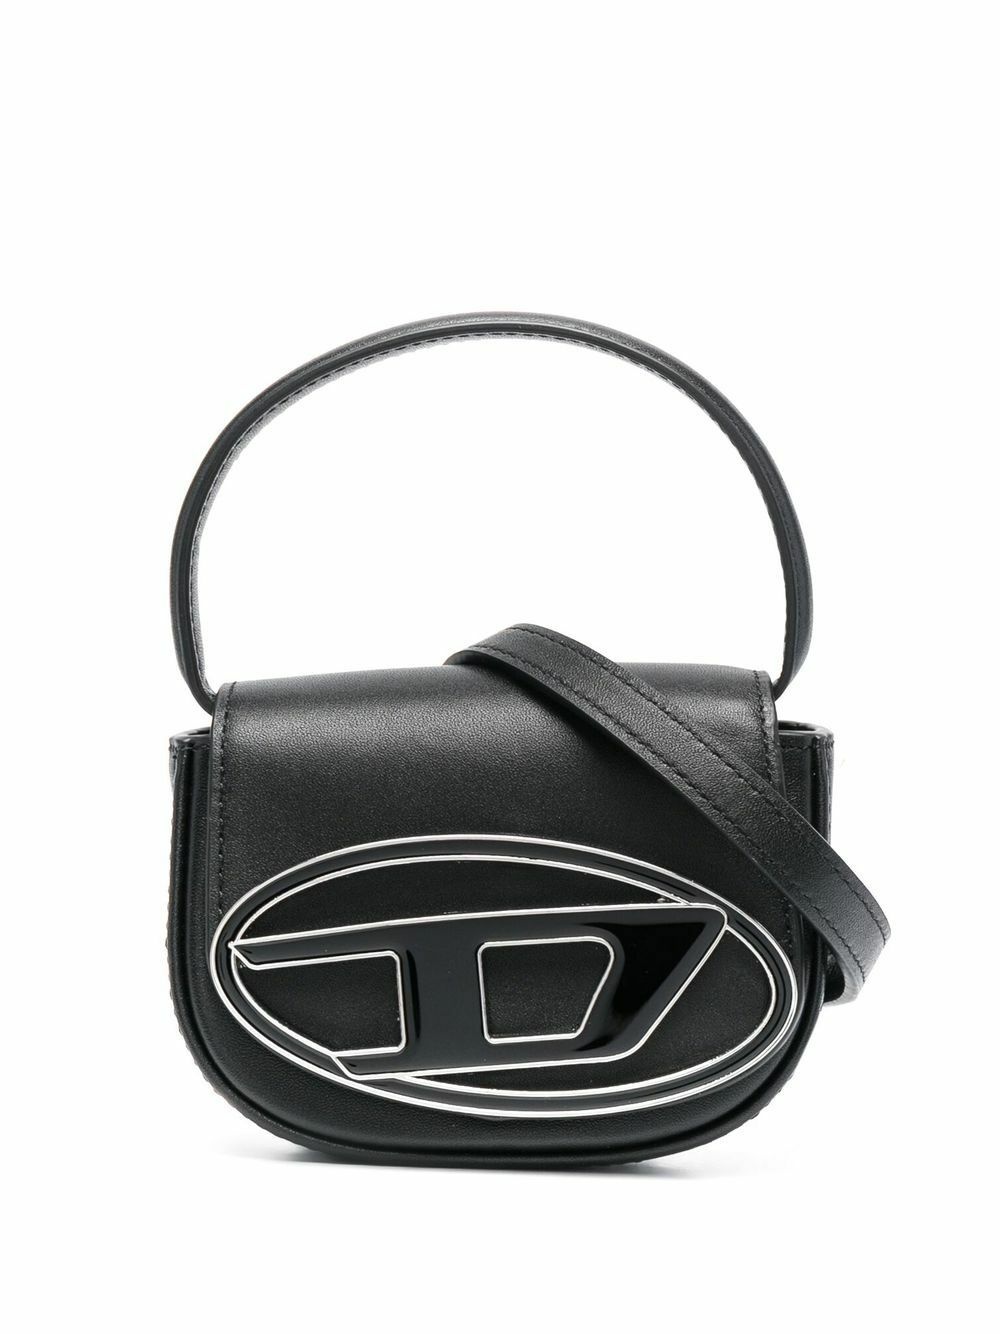 DIESEL - Logo Leather Mini Bag Diesel